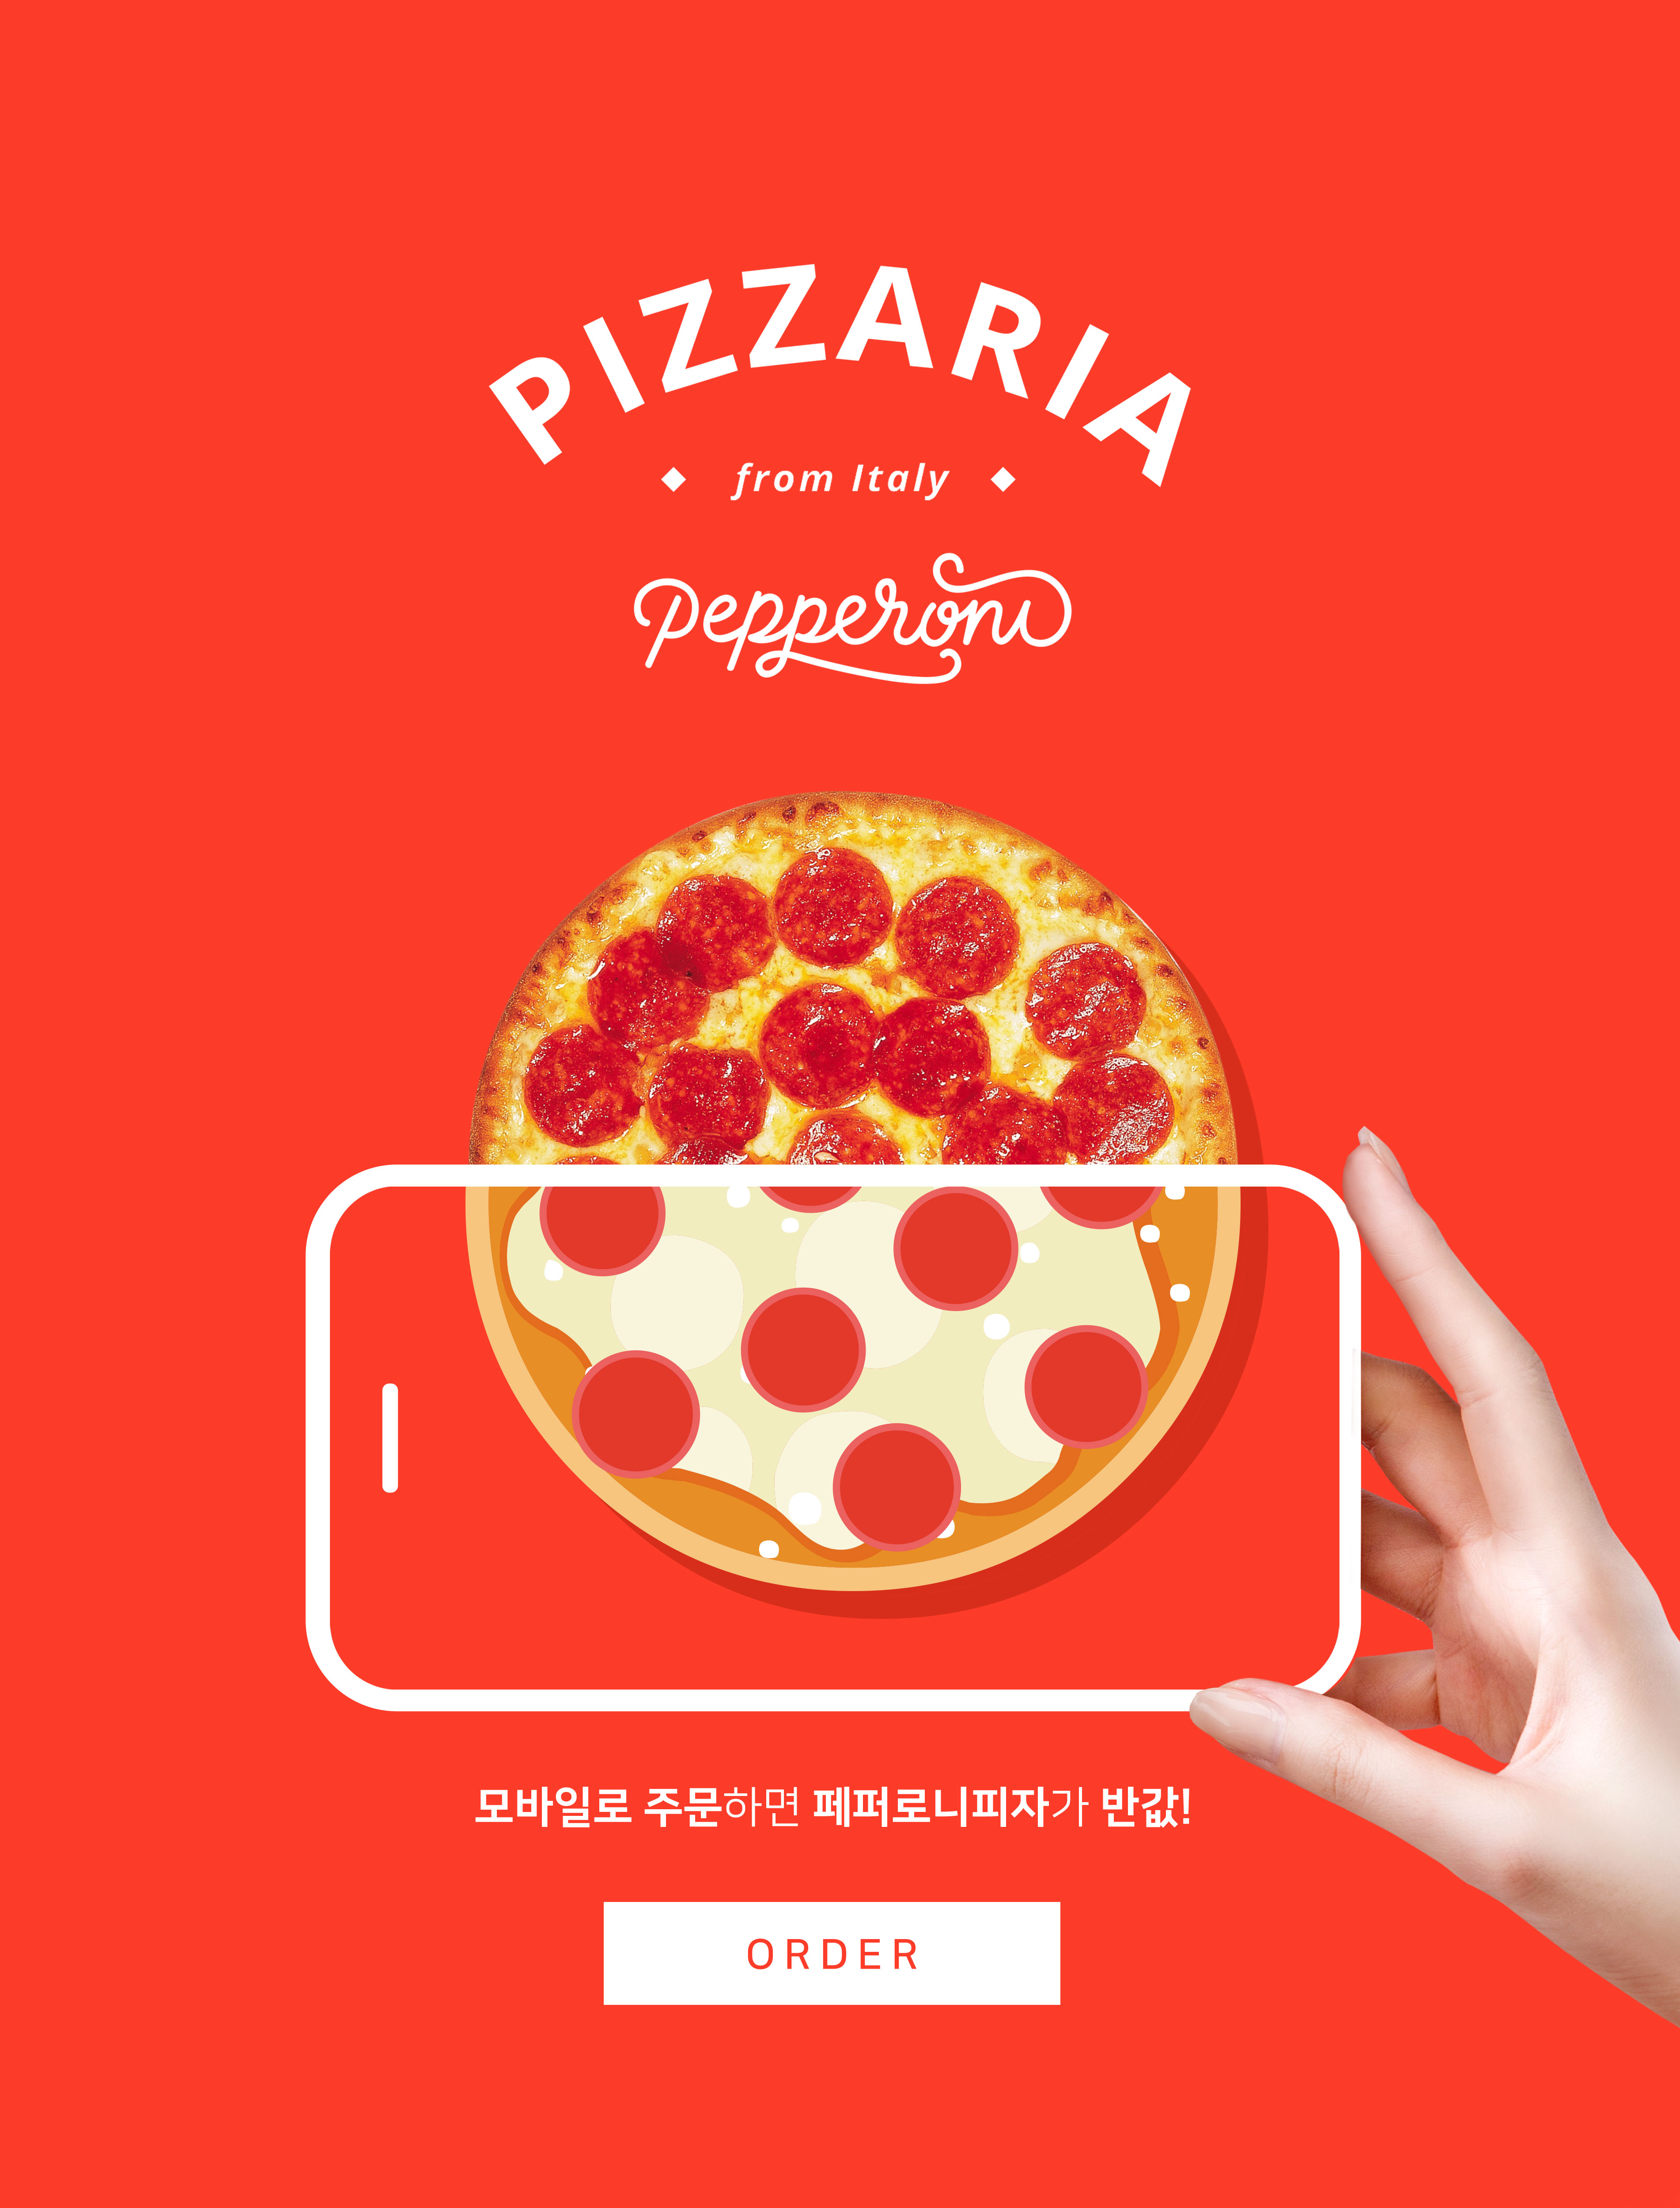 手机订购披萨半价活动宣传海报PSD素材普贤居精选素材插图